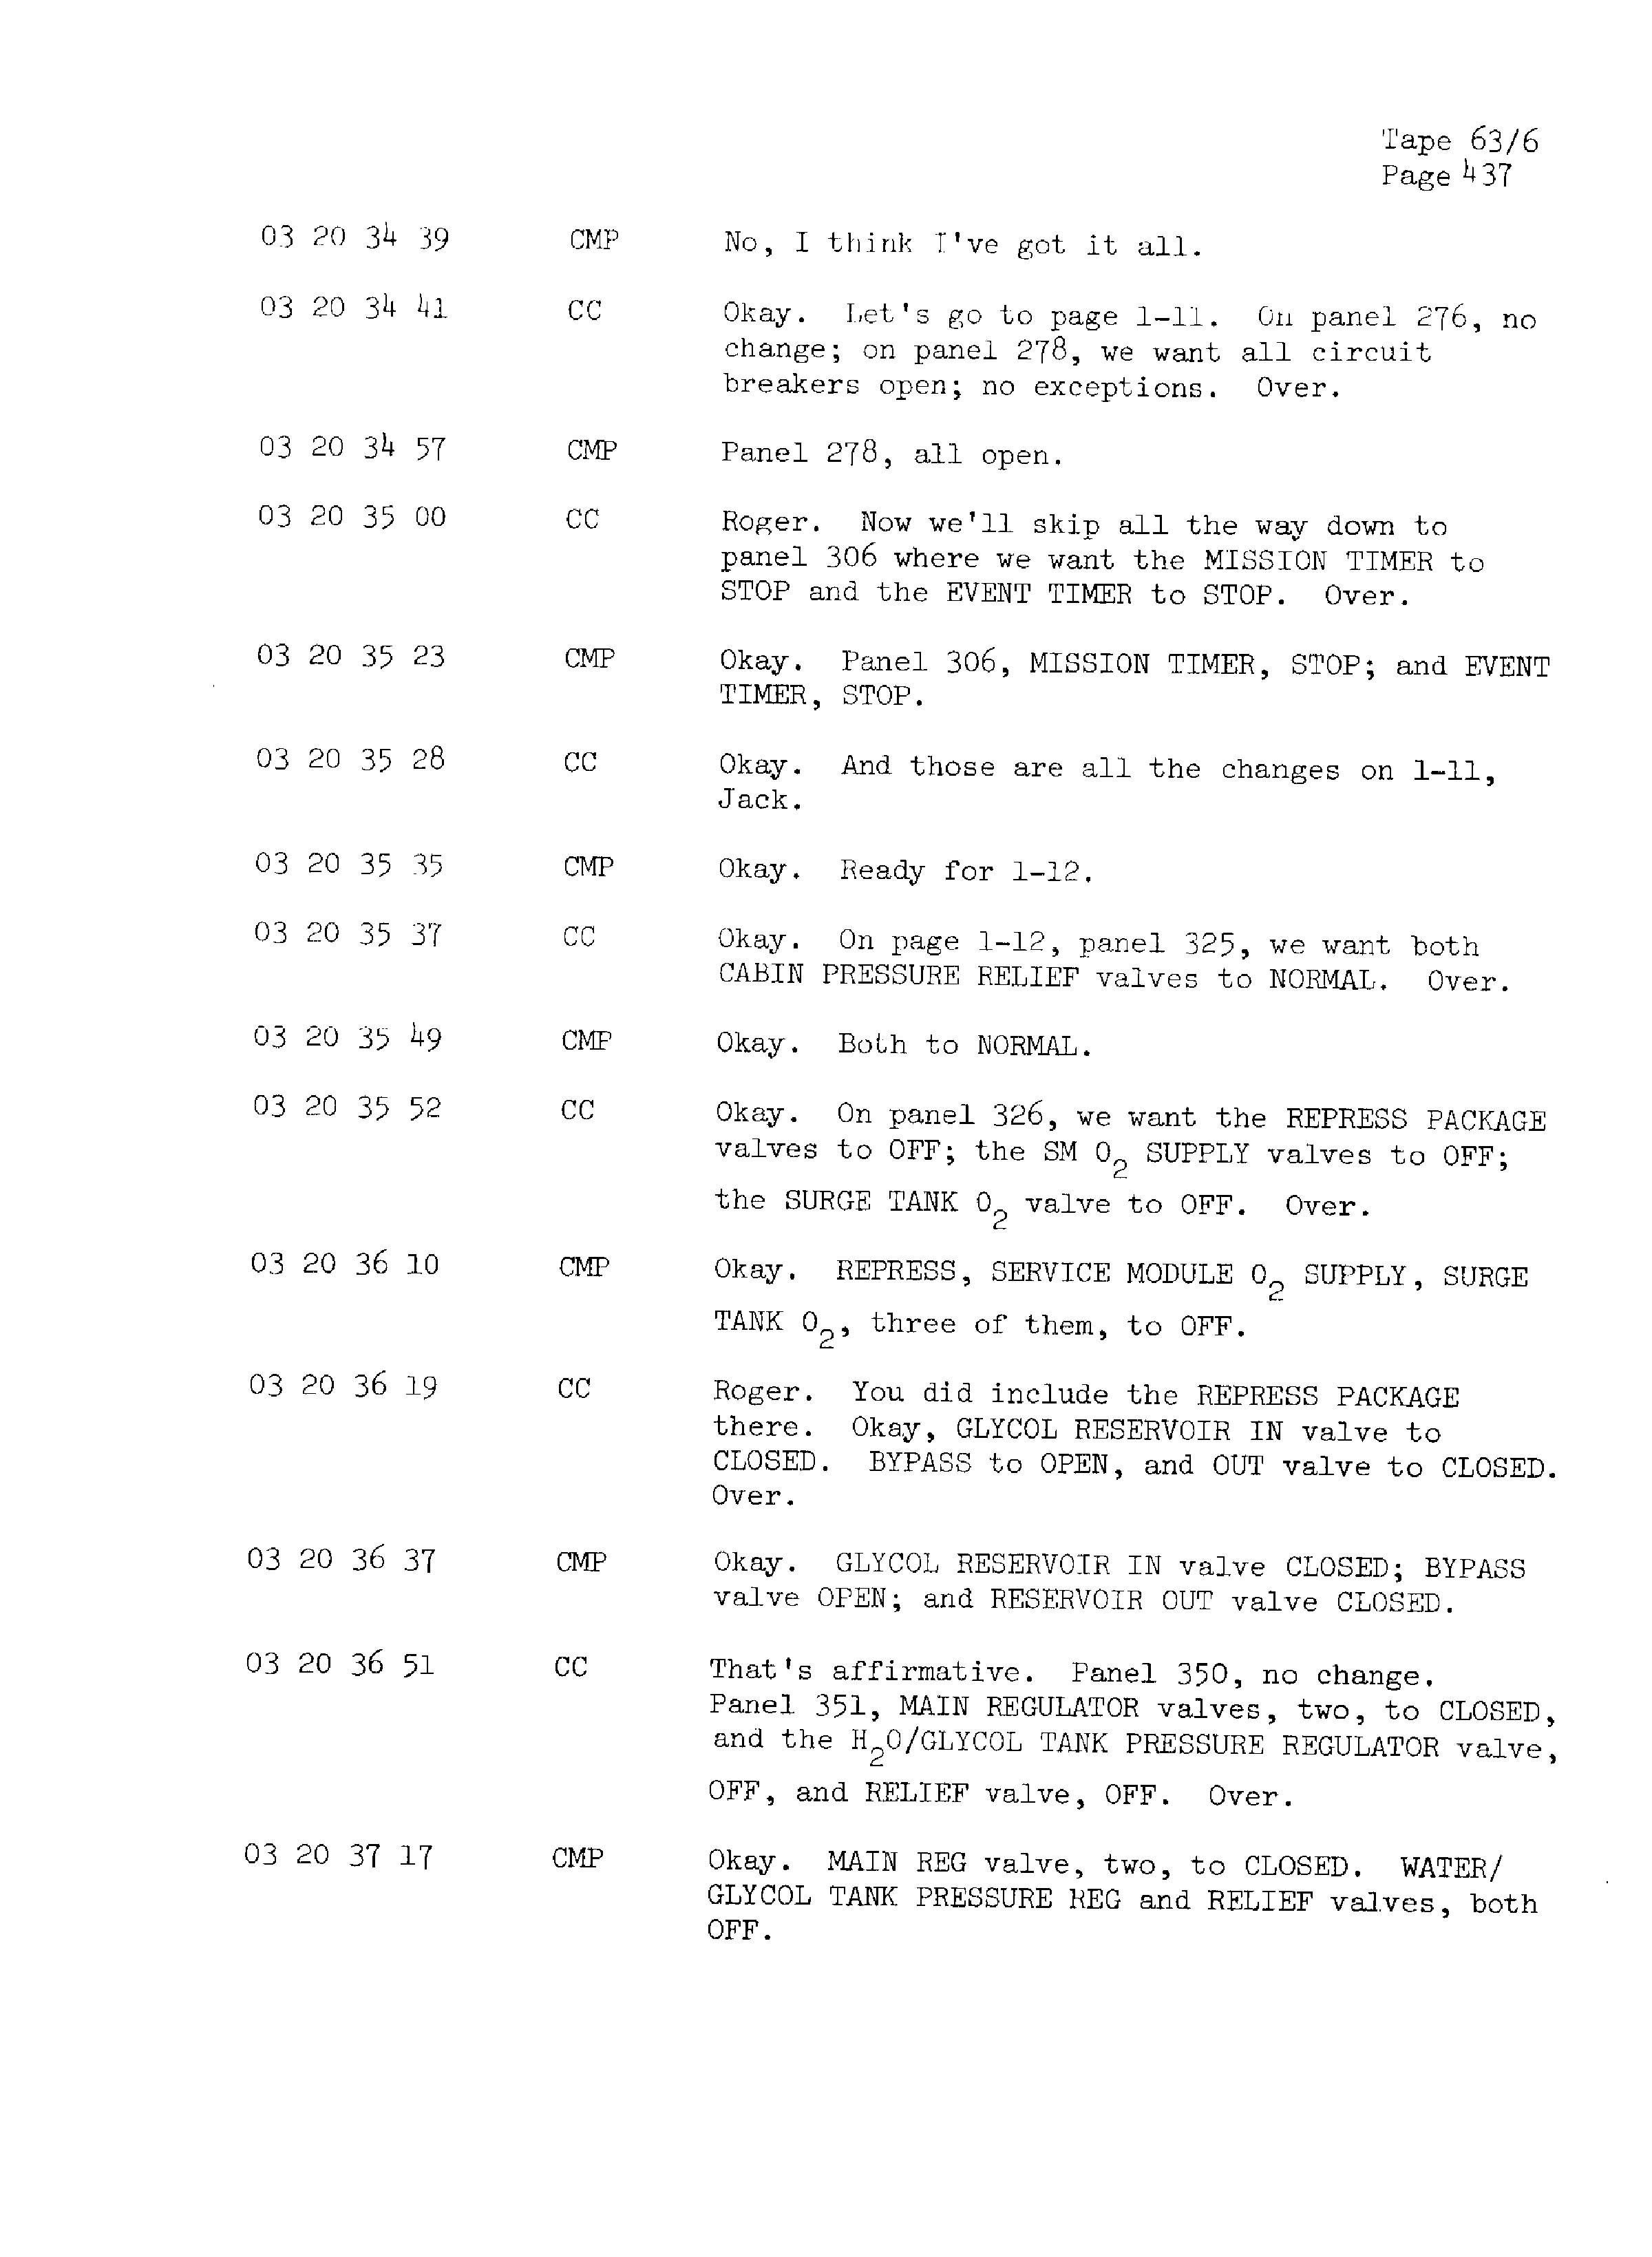 Page 444 of Apollo 13’s original transcript